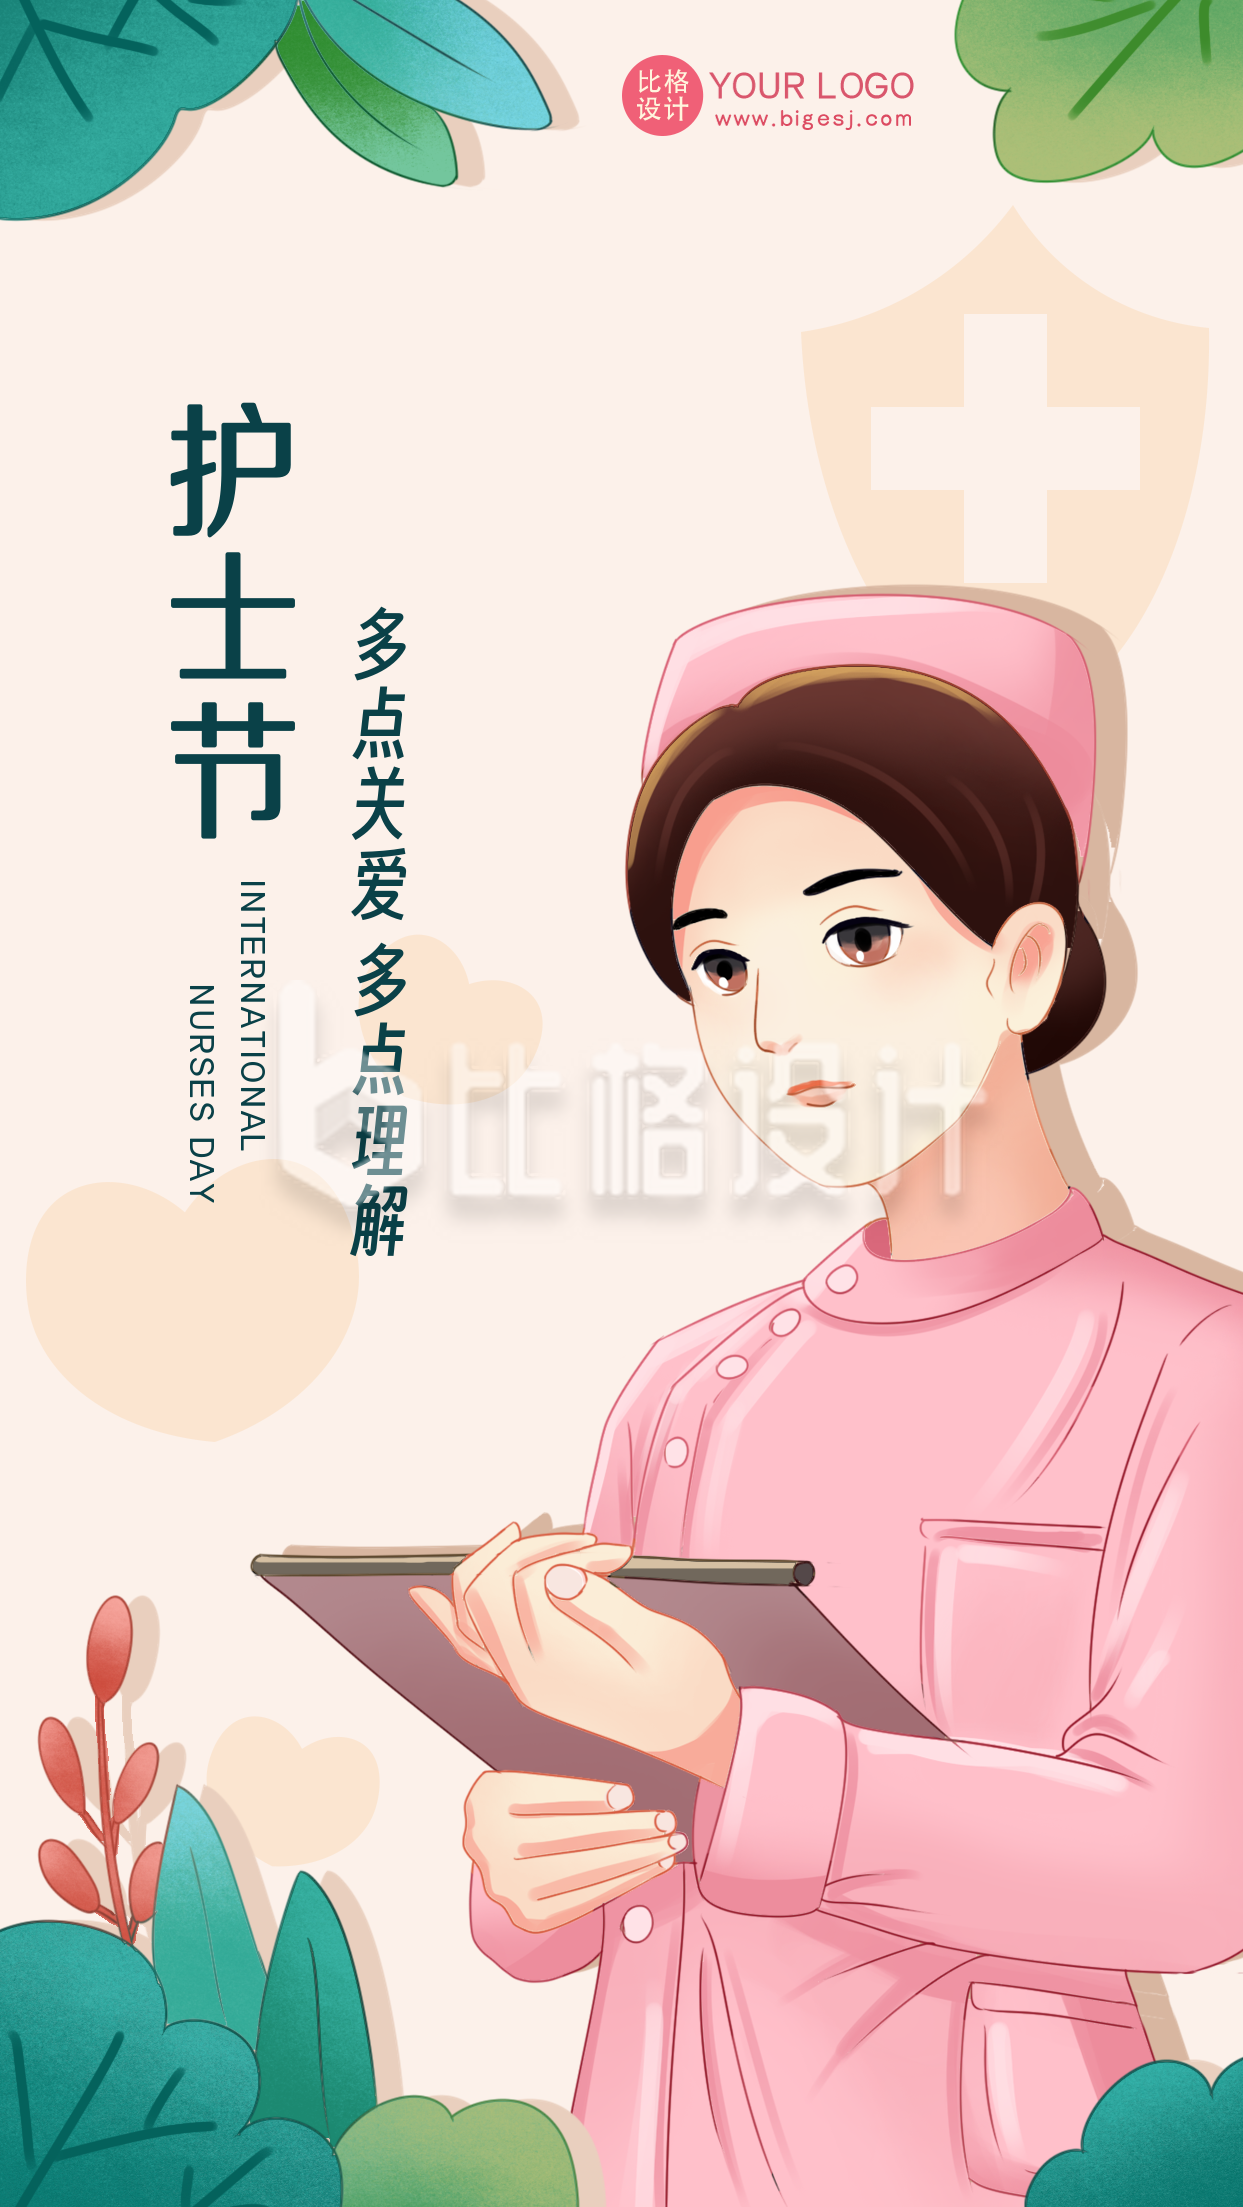 粉色手绘风护士节宣传手机海报